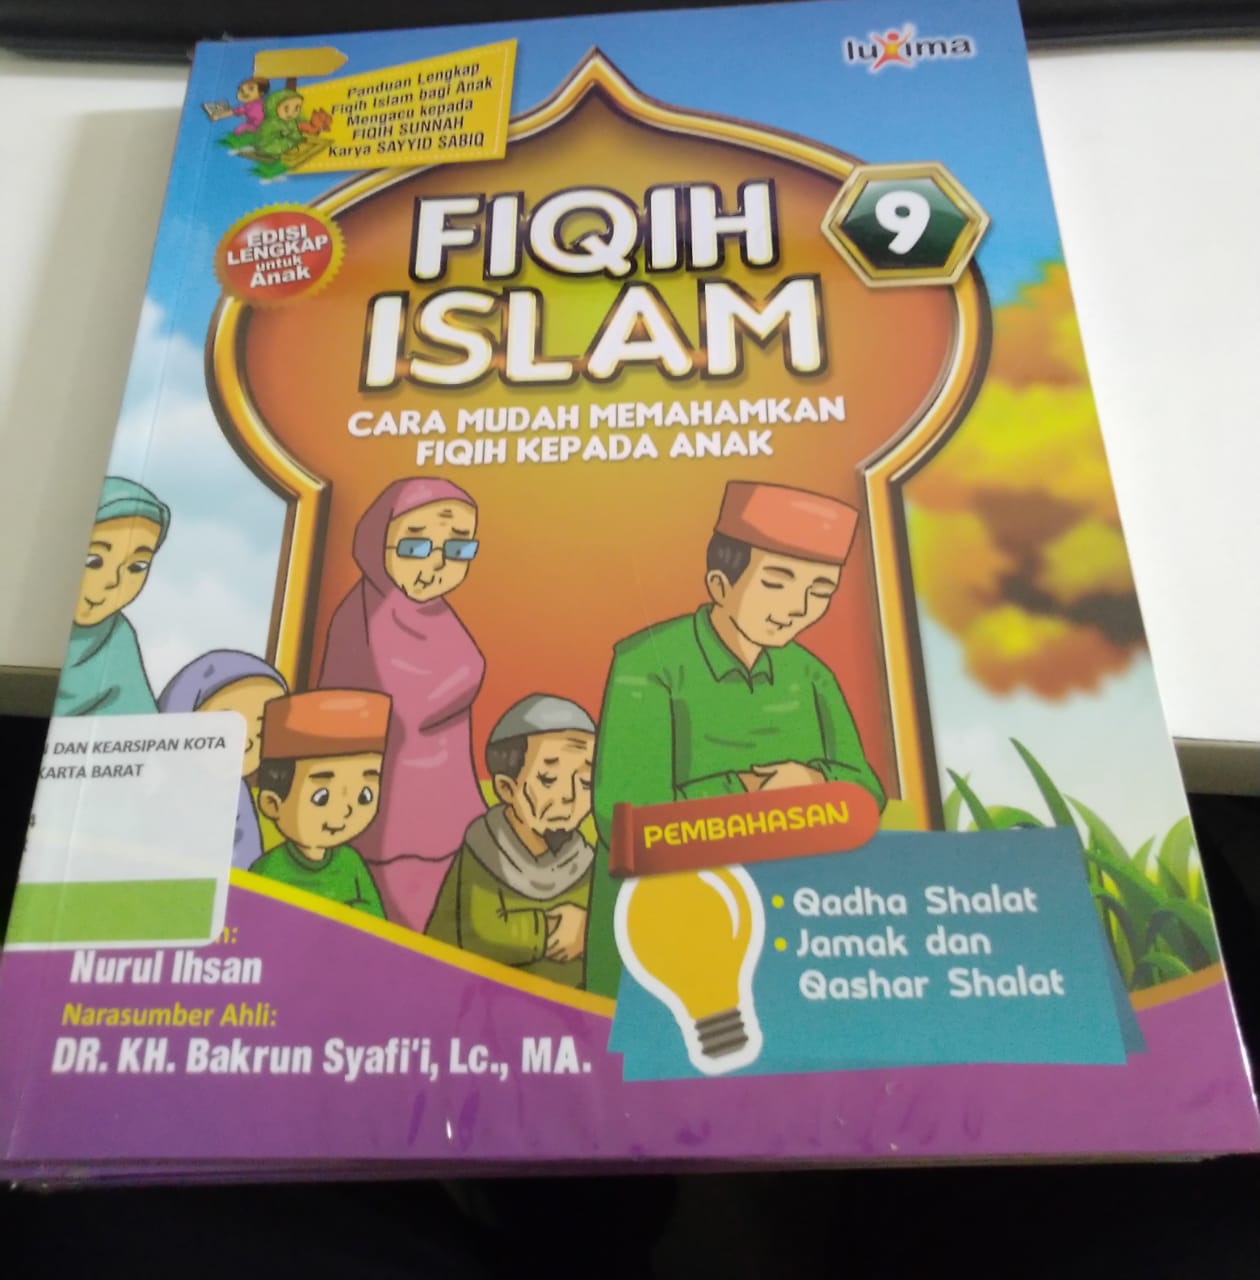 Fiqih islam jilid 9 :  Cara mudah memahamkan fiqih kepada anak